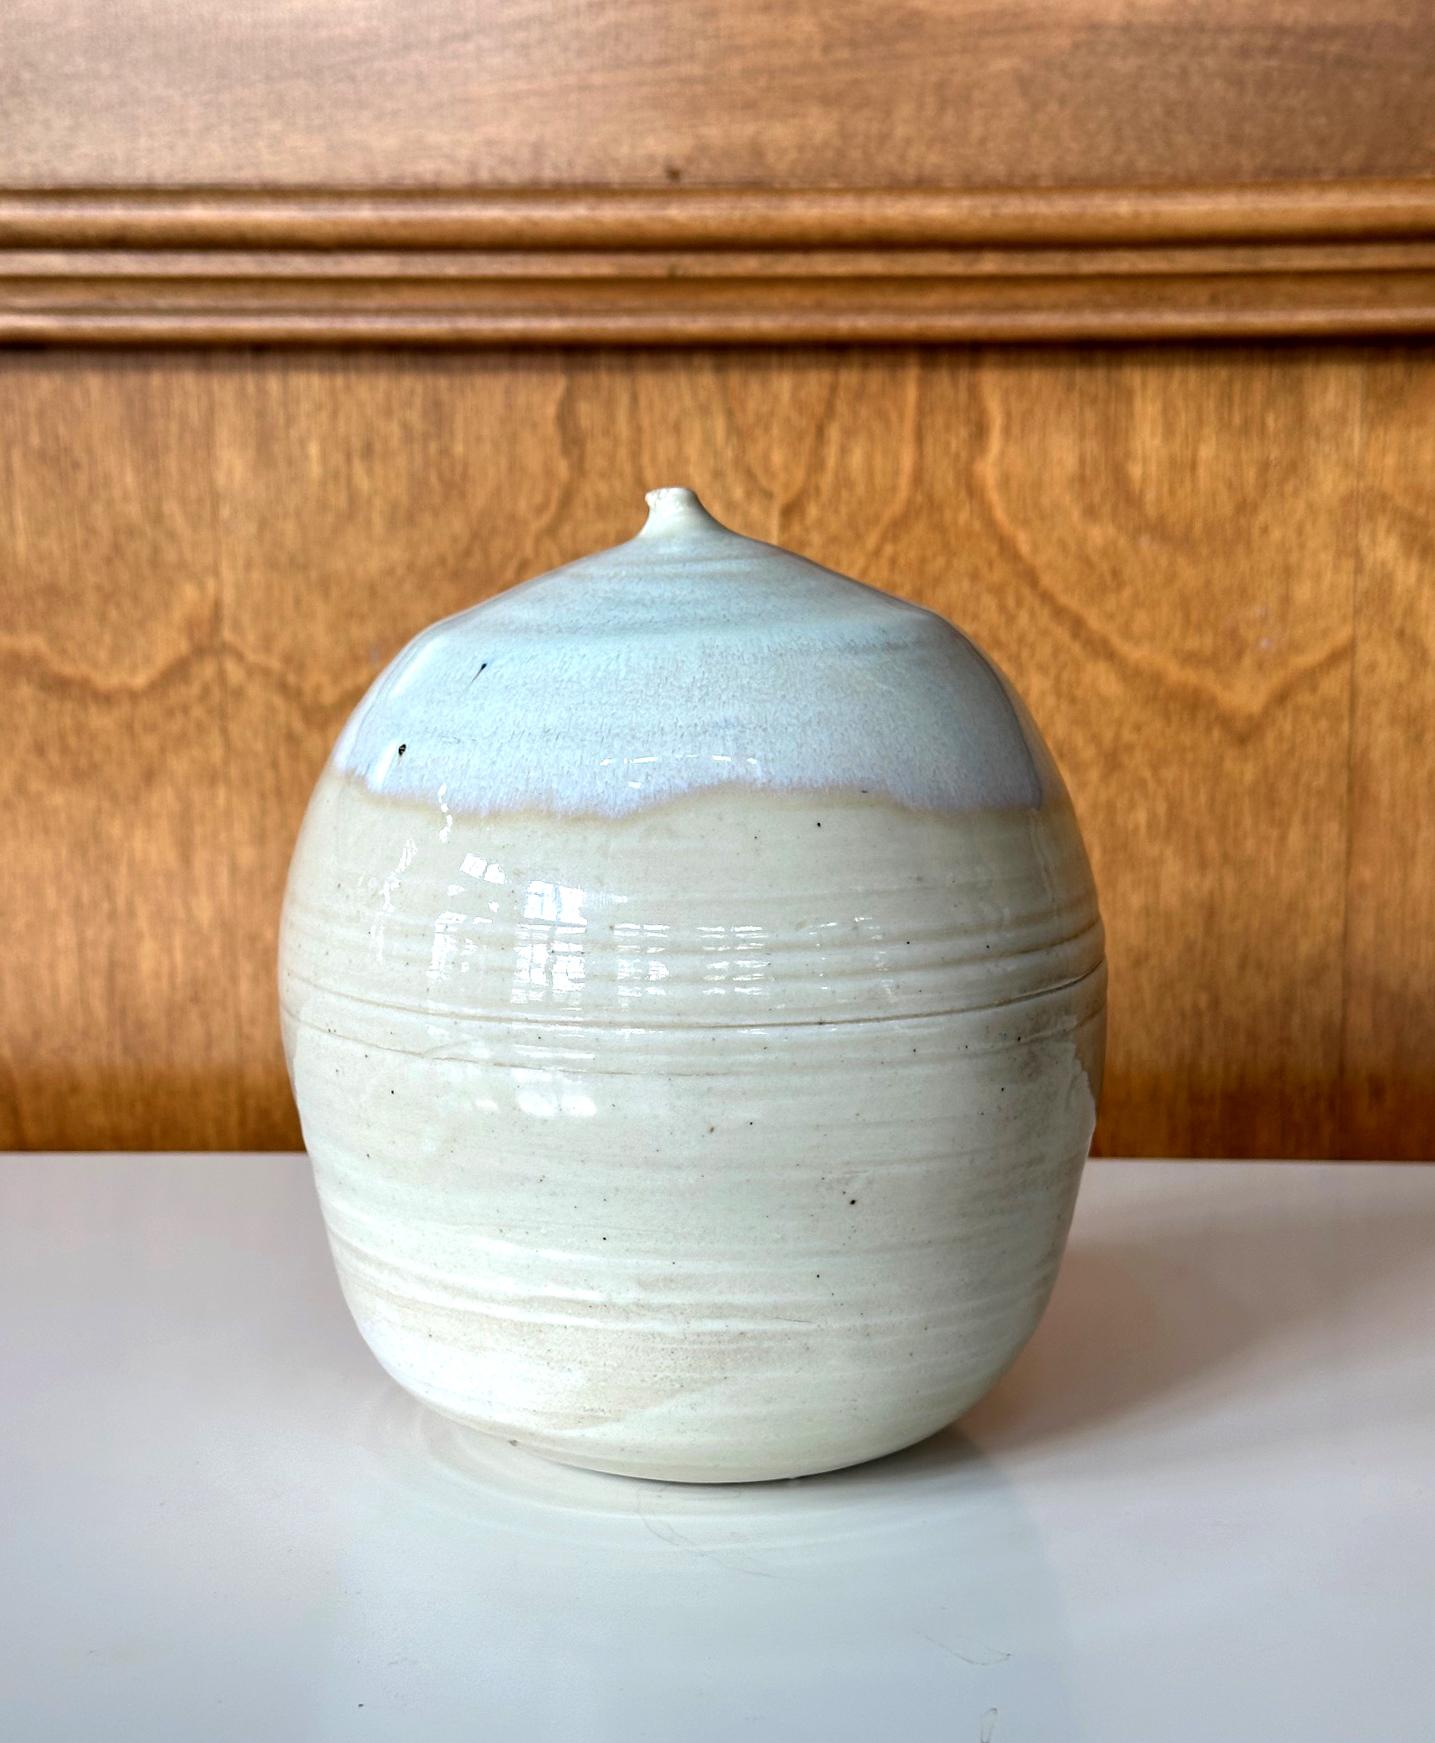 Ein Keramikgefäß in geschlossener Form mit Rassel der japanisch-amerikanischen Künstlerin Toshiko Takaezu (Amerikanerin, 1922 - 2011). 
Die Geschichte: In den 1980er Jahren lud die Töpferin Lola RAE Toshika in ihr Keramikstudio und ihren Brennofen